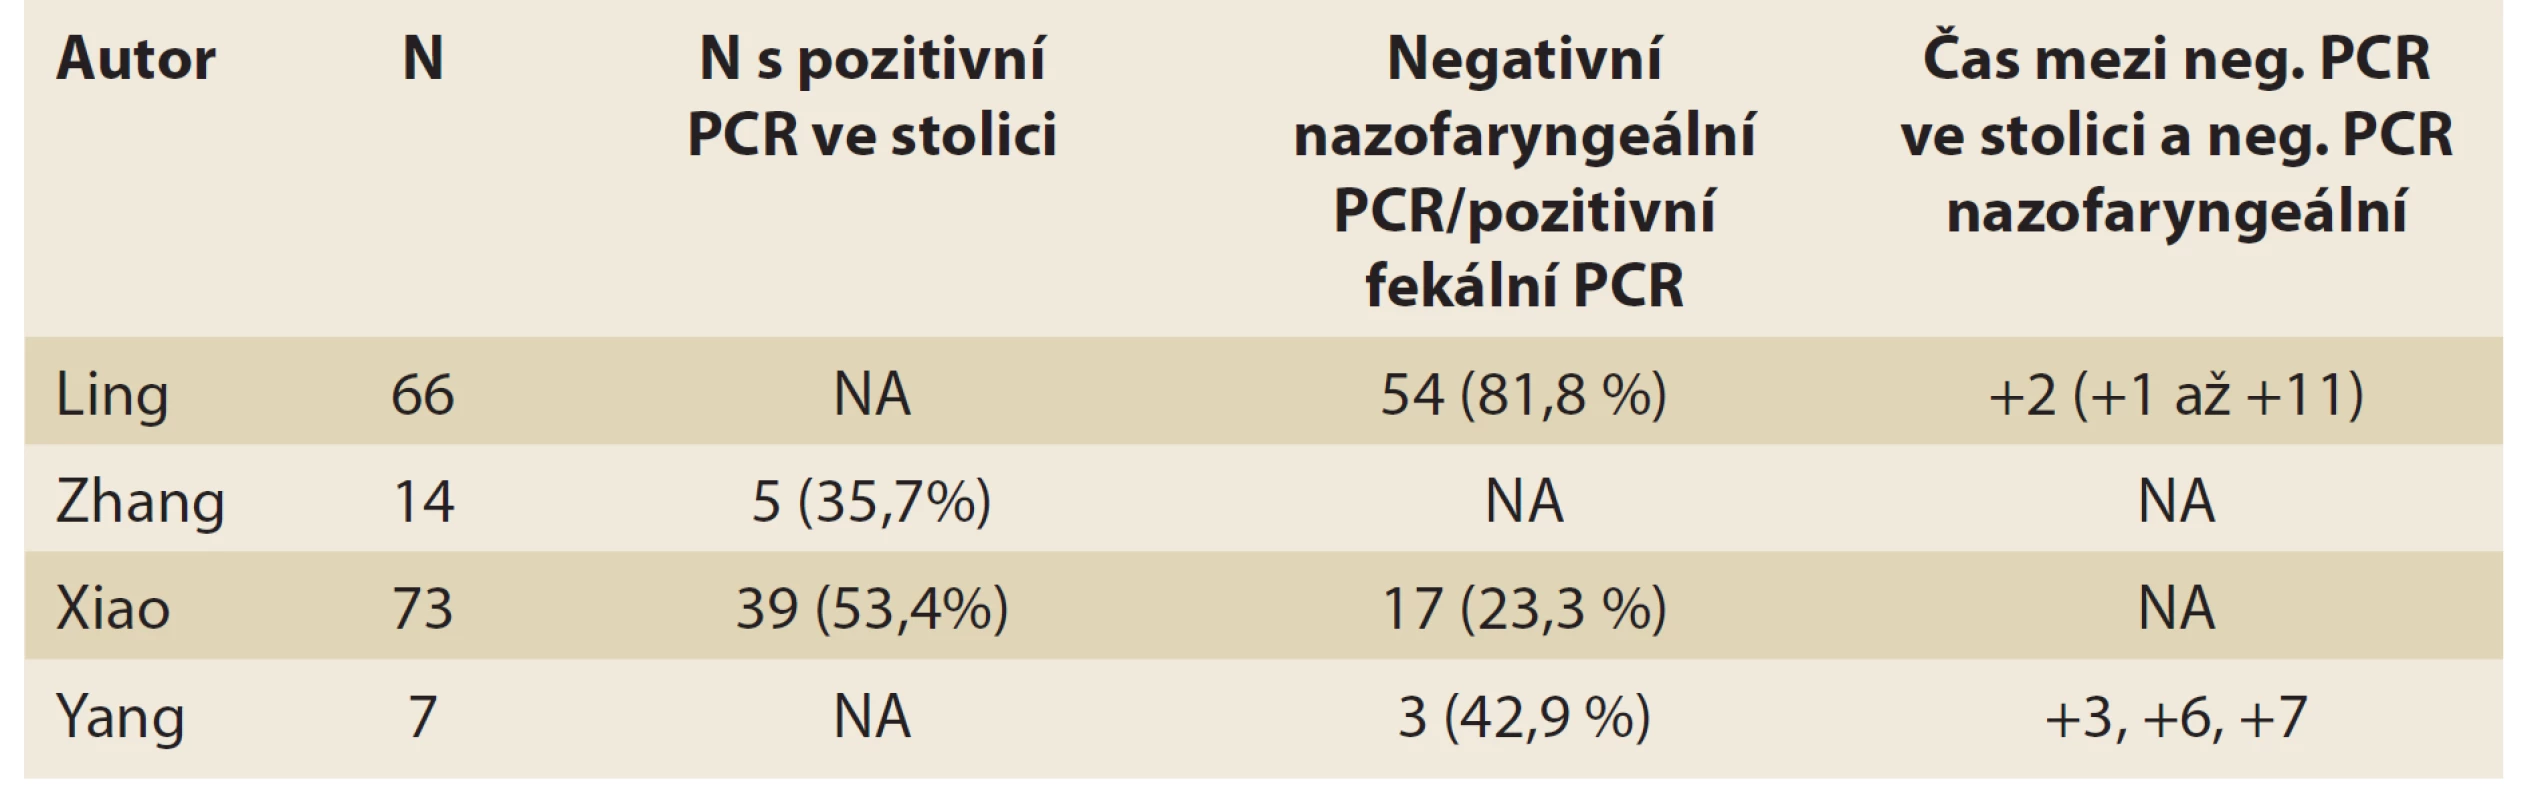 Fekální pozitivita PCR SARS-CoV-2 [8].<br>
Tab. 2. Fecal positivity PCR SARS-CoV-2 [8].